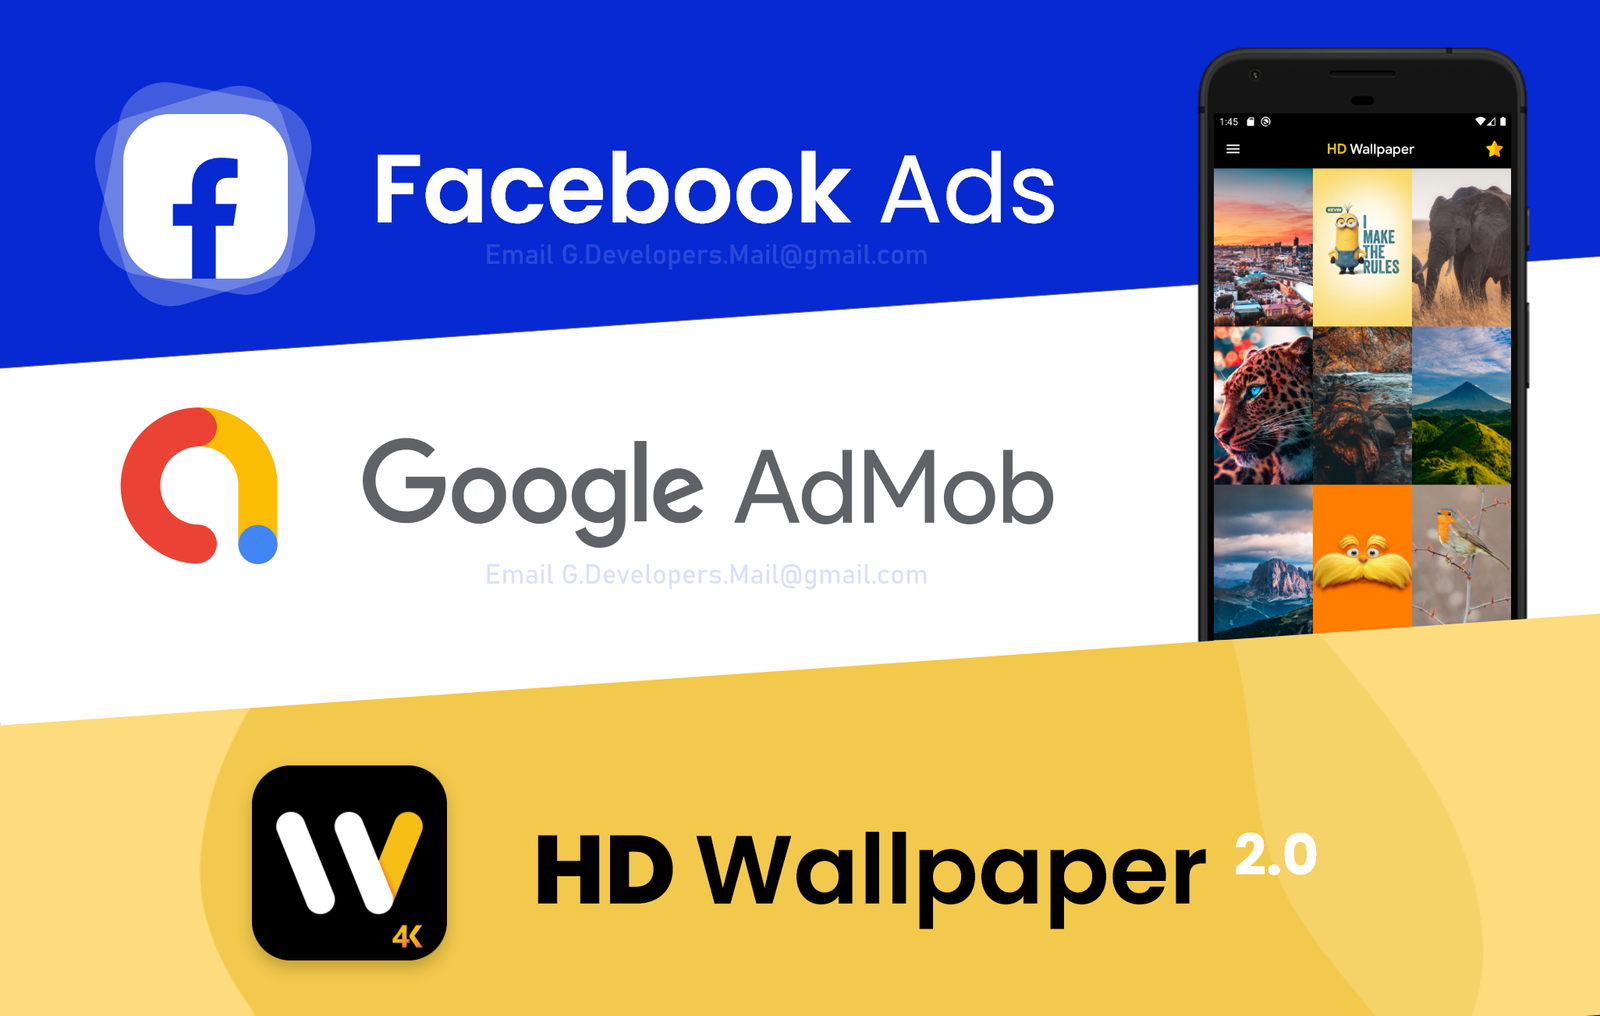 HD Wallpaper admob ads